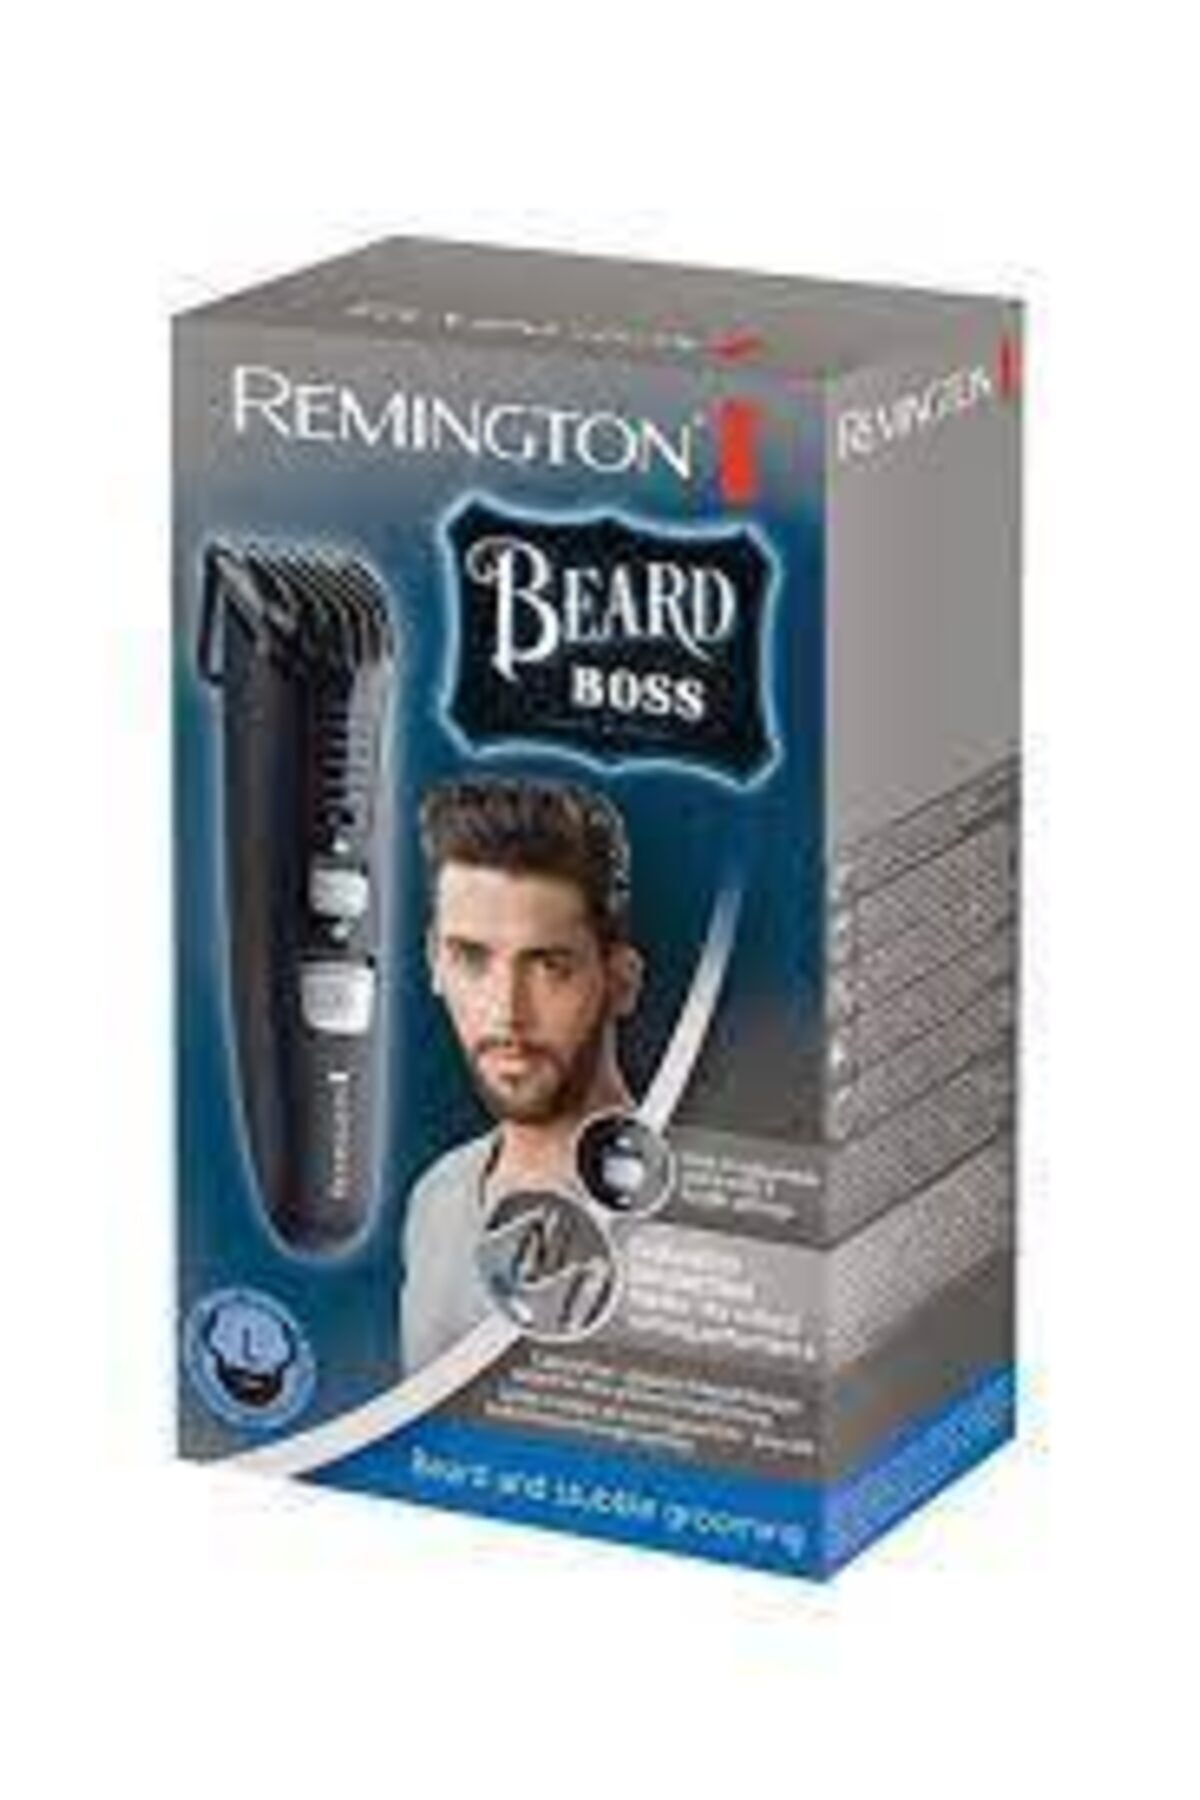 Remington Beard Boss Tıraş Makinesi Mb4120 E51 4008496870257